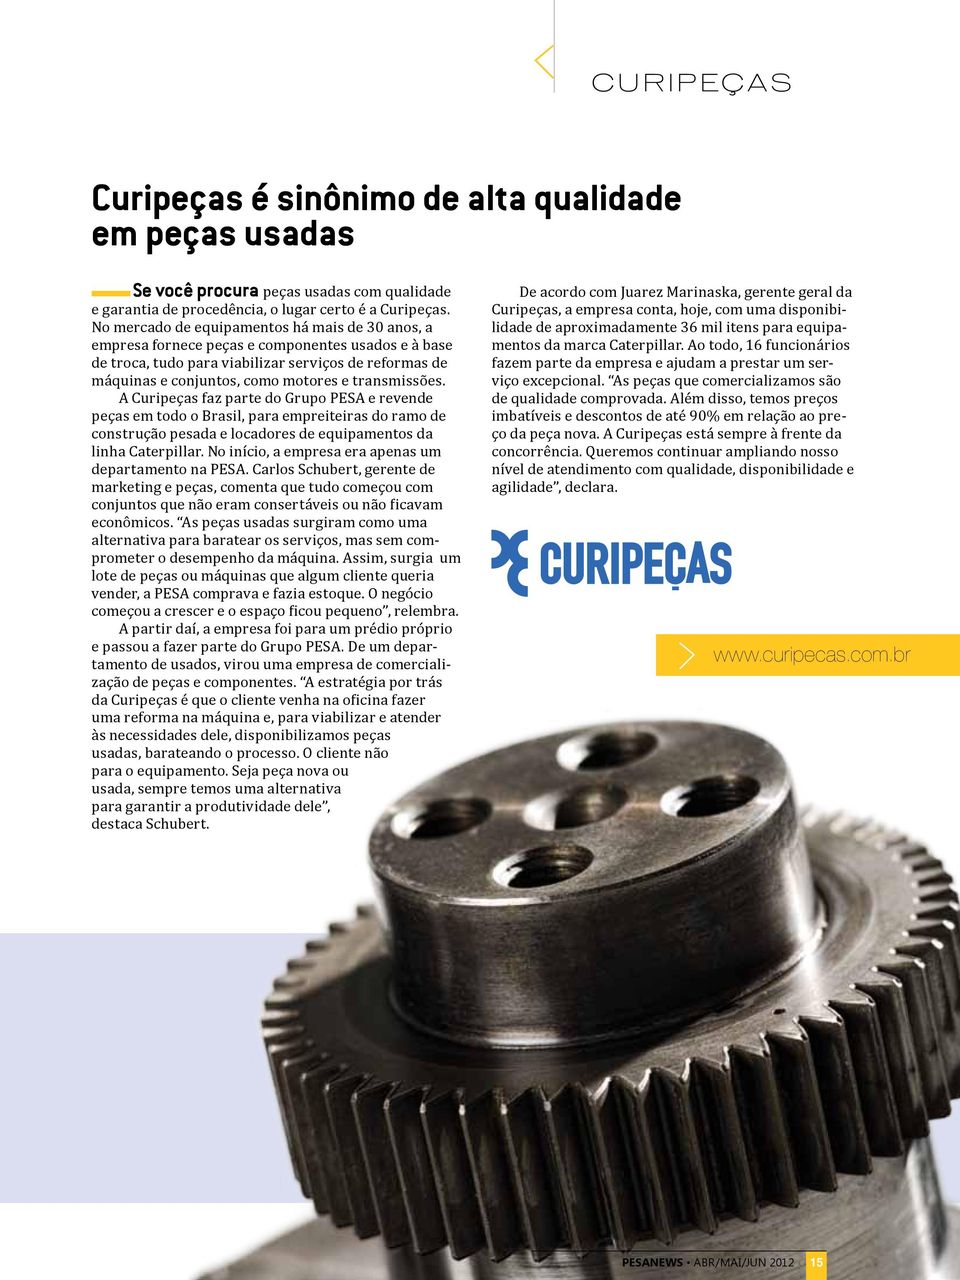 transmissões. A Curipeças faz parte do Grupo PESA e revende peças em todo o Brasil, para empreiteiras do ramo de construção pesada e locadores de equipamentos da linha Caterpillar.